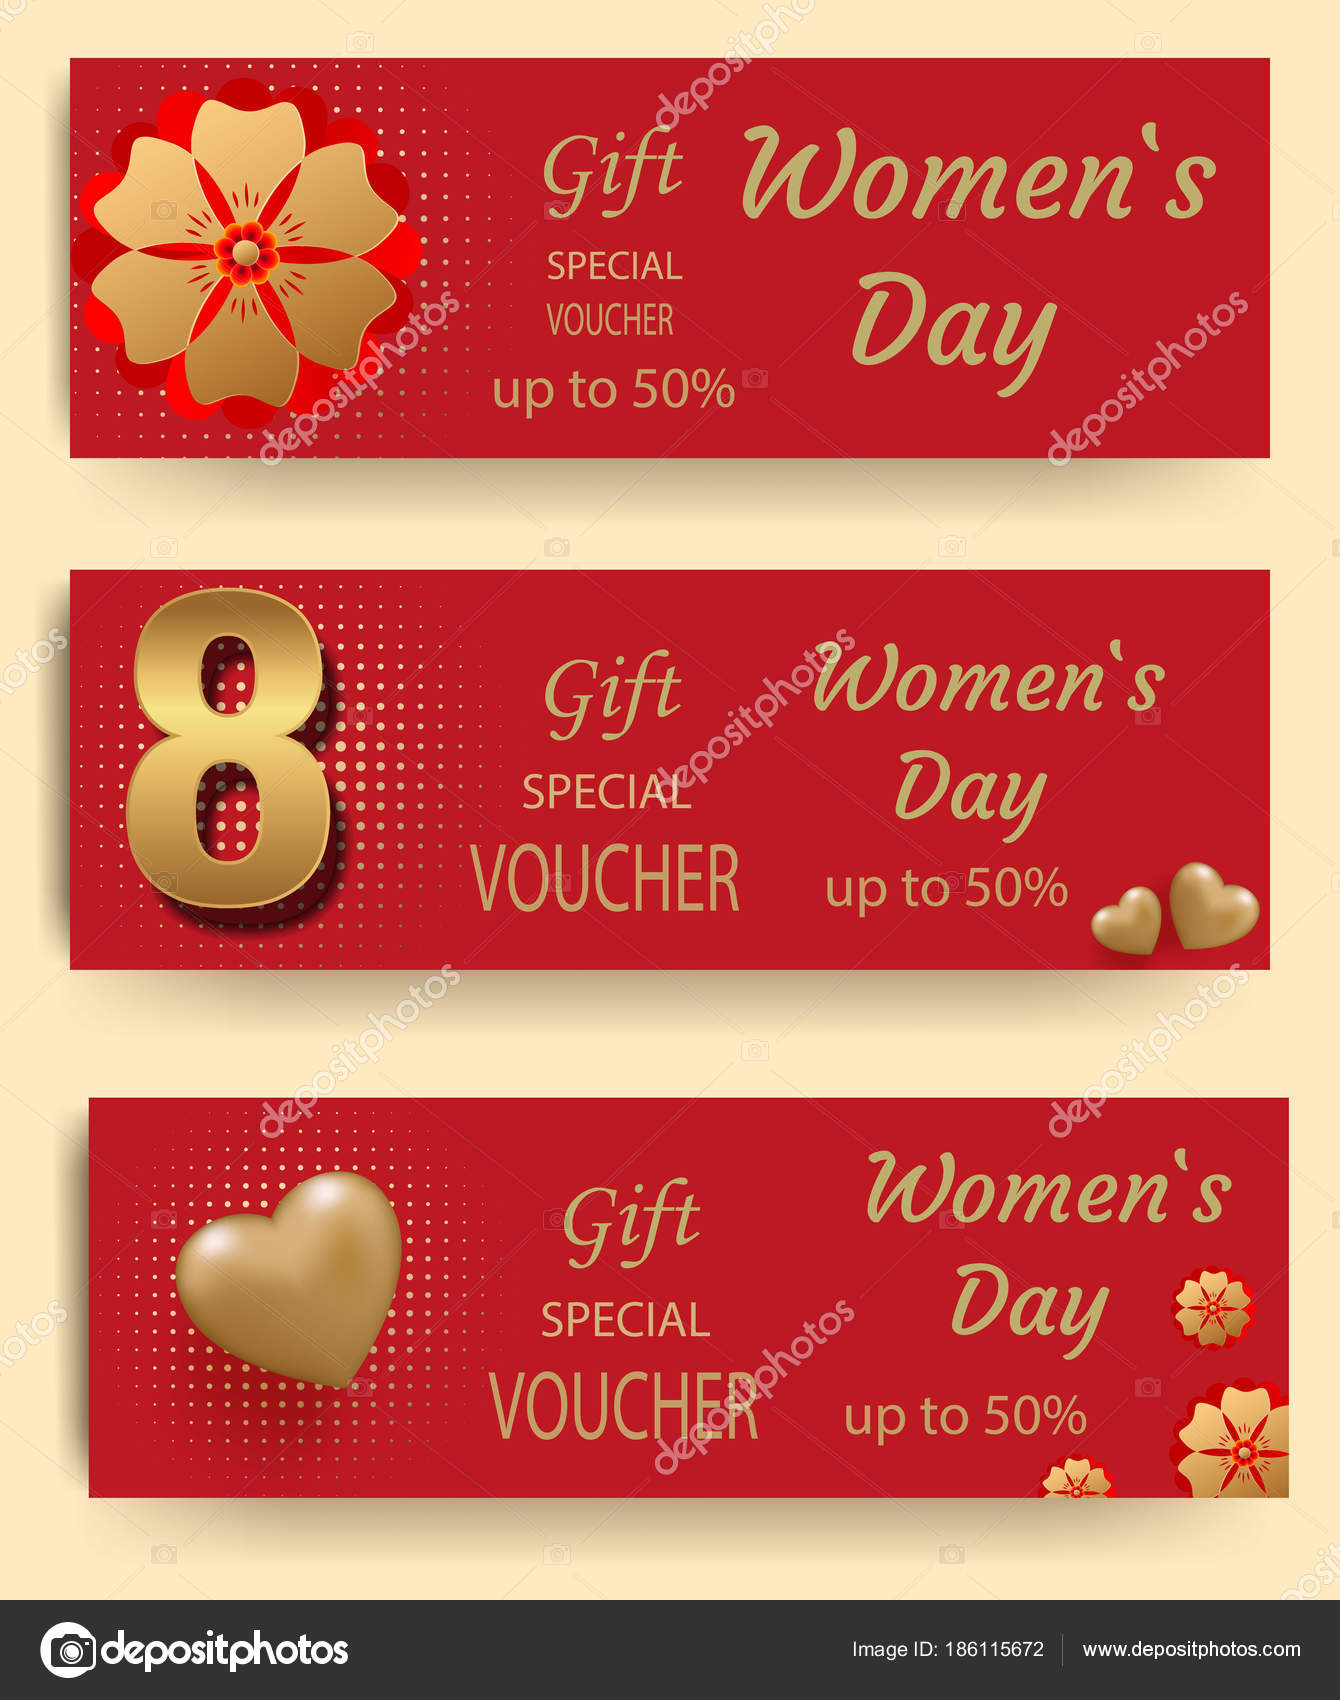 gift voucher for women